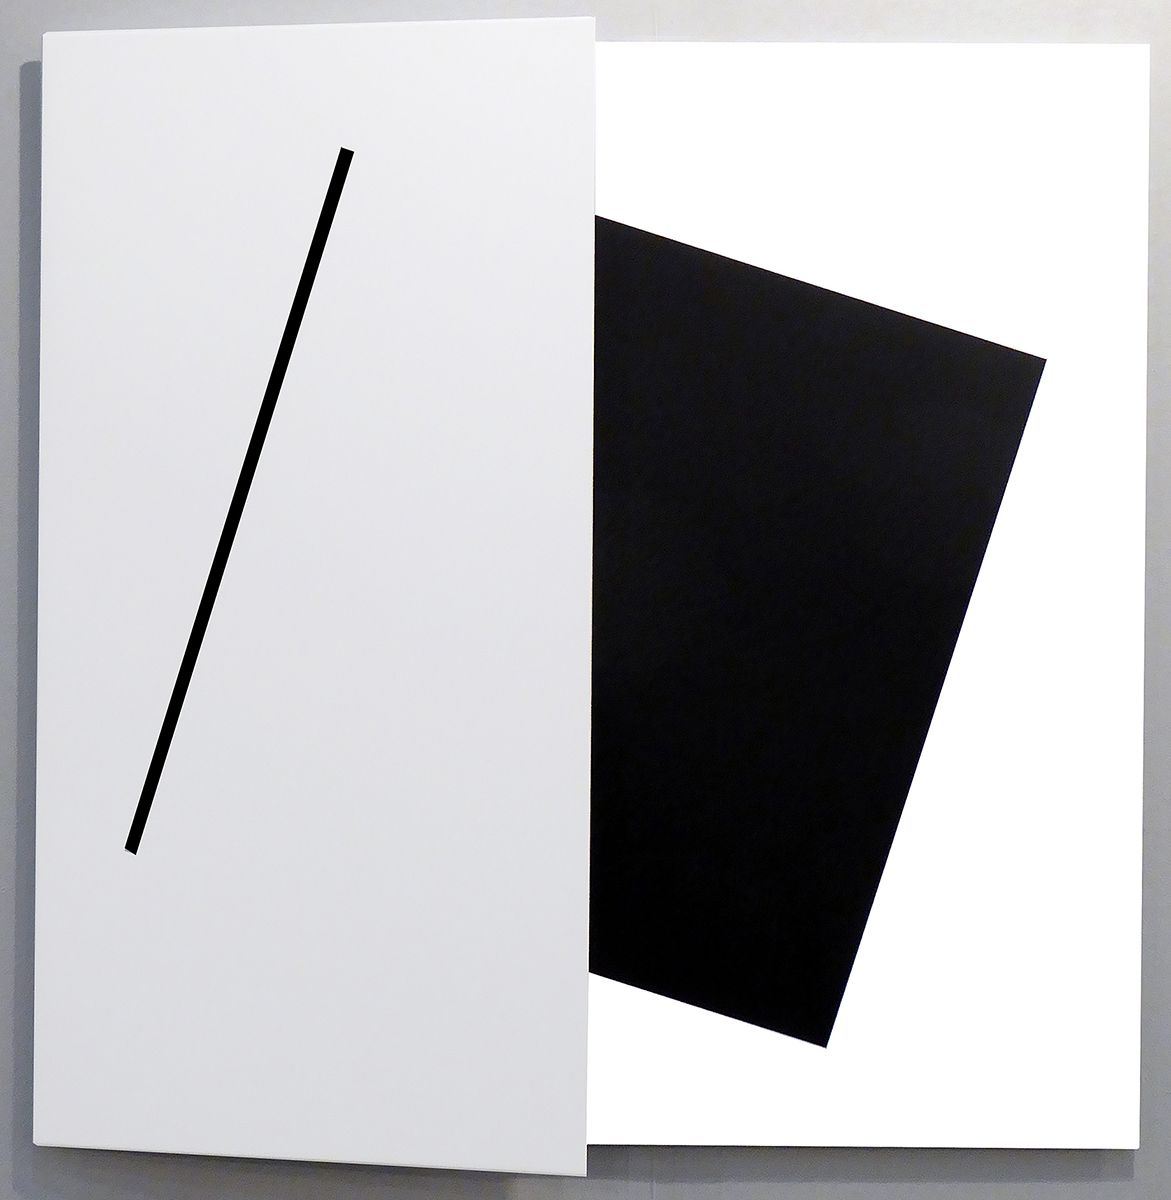 Kontur - DAS Schwarze Quadrat, 202050 x 50 x 6 cmwhite-black, line painted,aluminum, acrylic lacquer